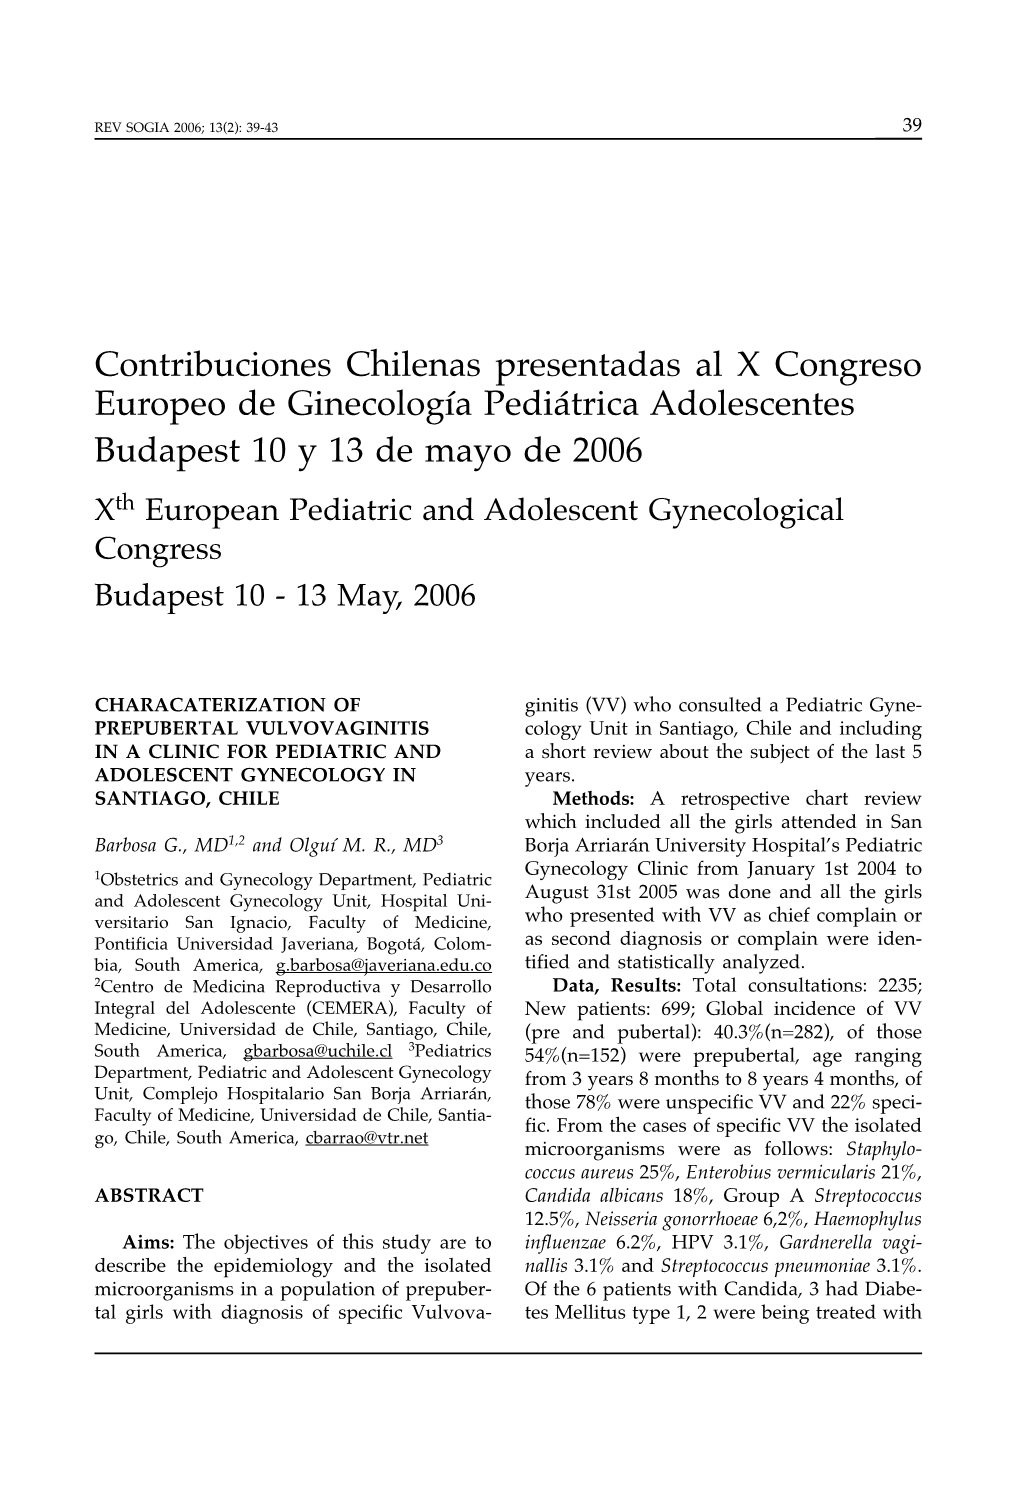 Contribuciones Chilenas Presentadas Al X Congreso Europeo De Ginecología Pediátrica Adolescentes Budapest 10 Y 13 De Mayo De 2